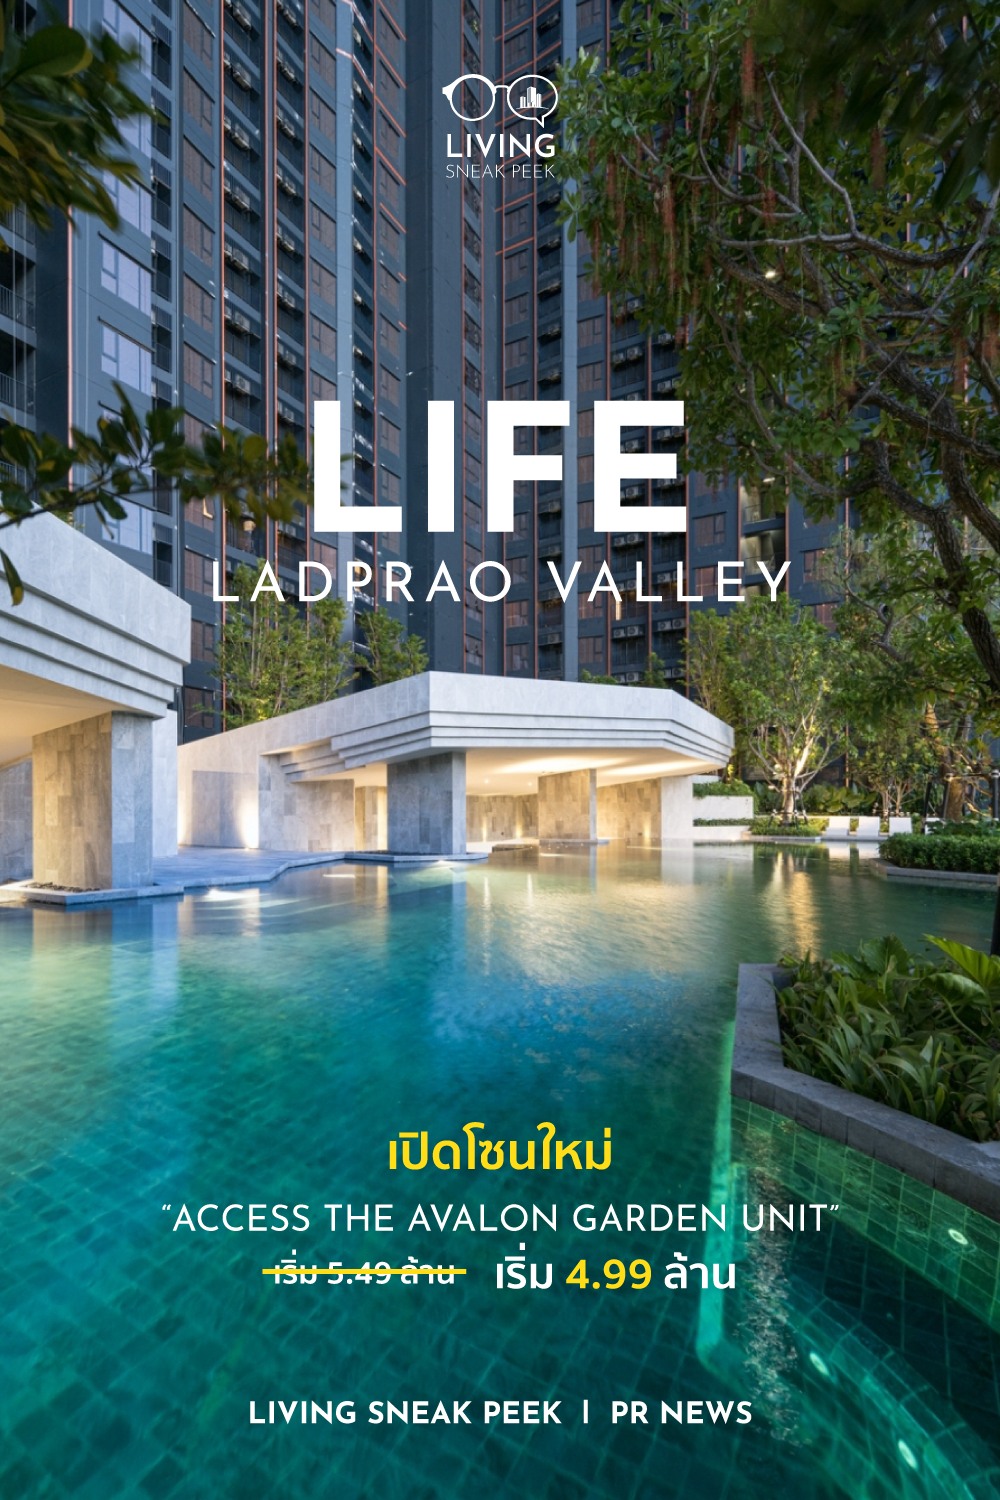 คอนโด Life Ladprao Valley